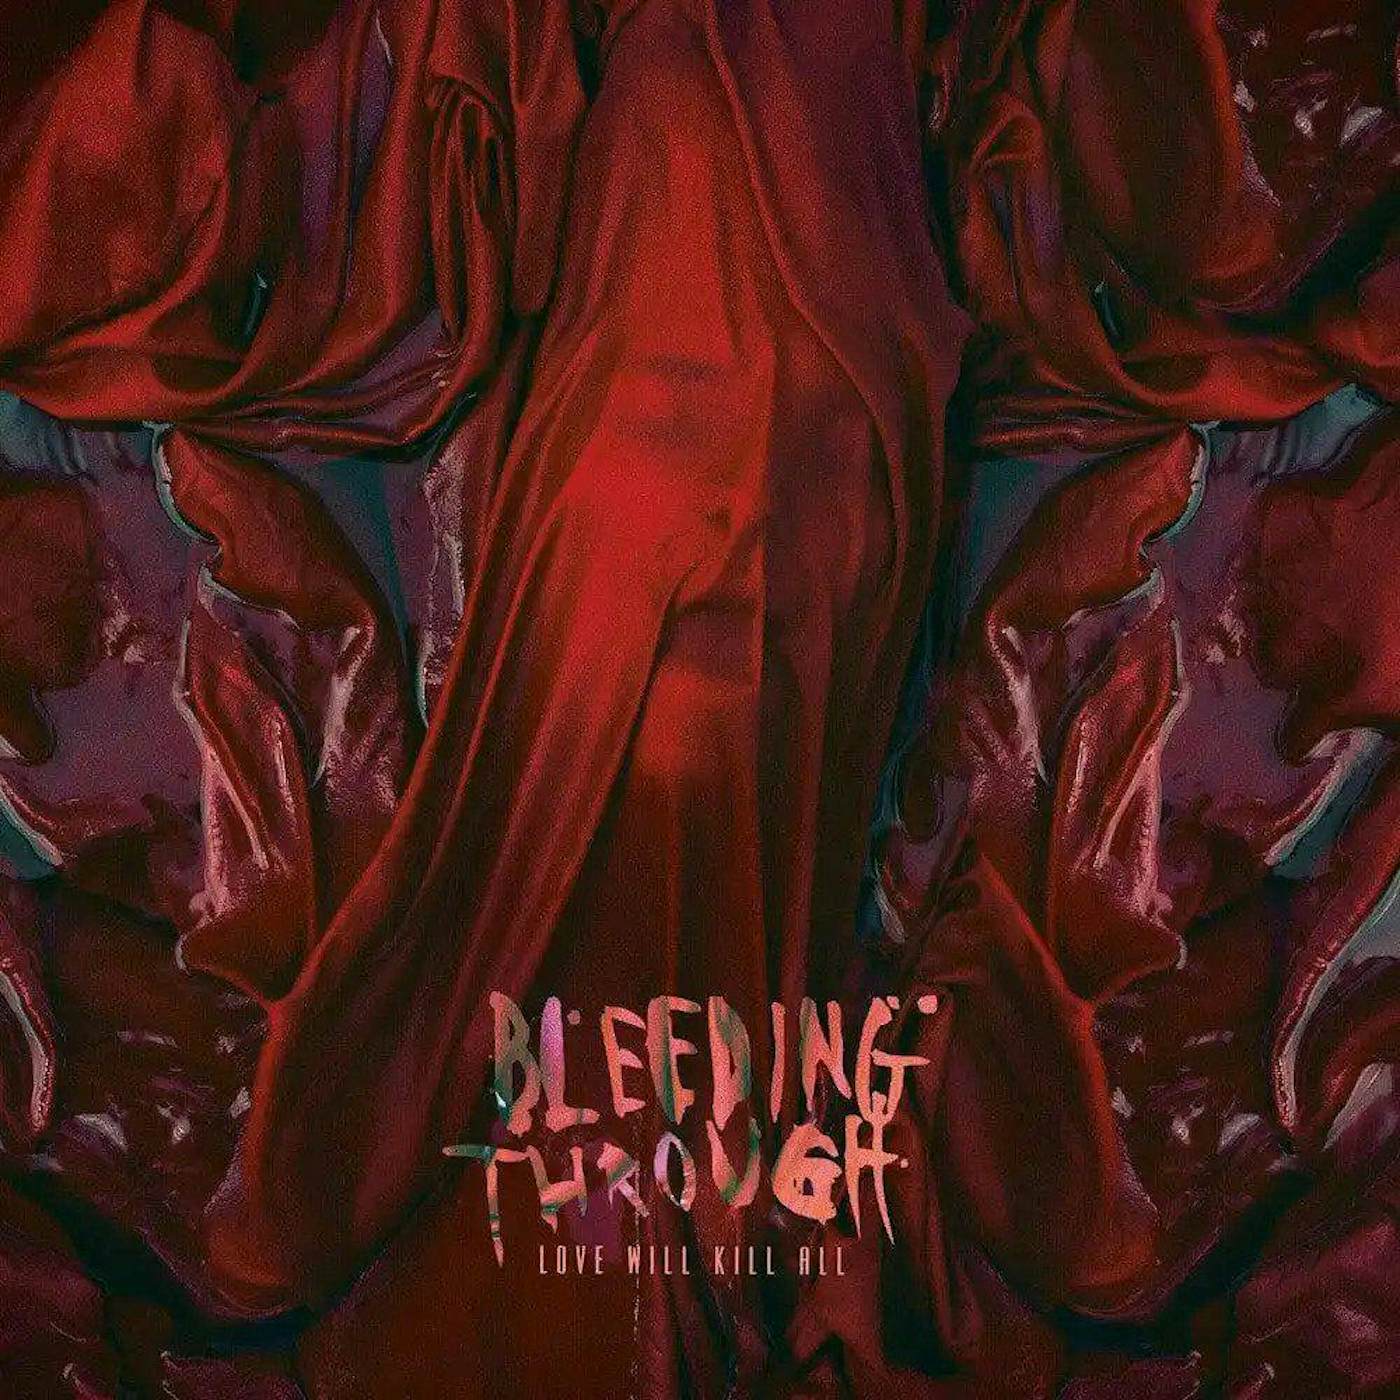 Bleeding Through - 'Love Will Kill All' Trans Red Vinyl